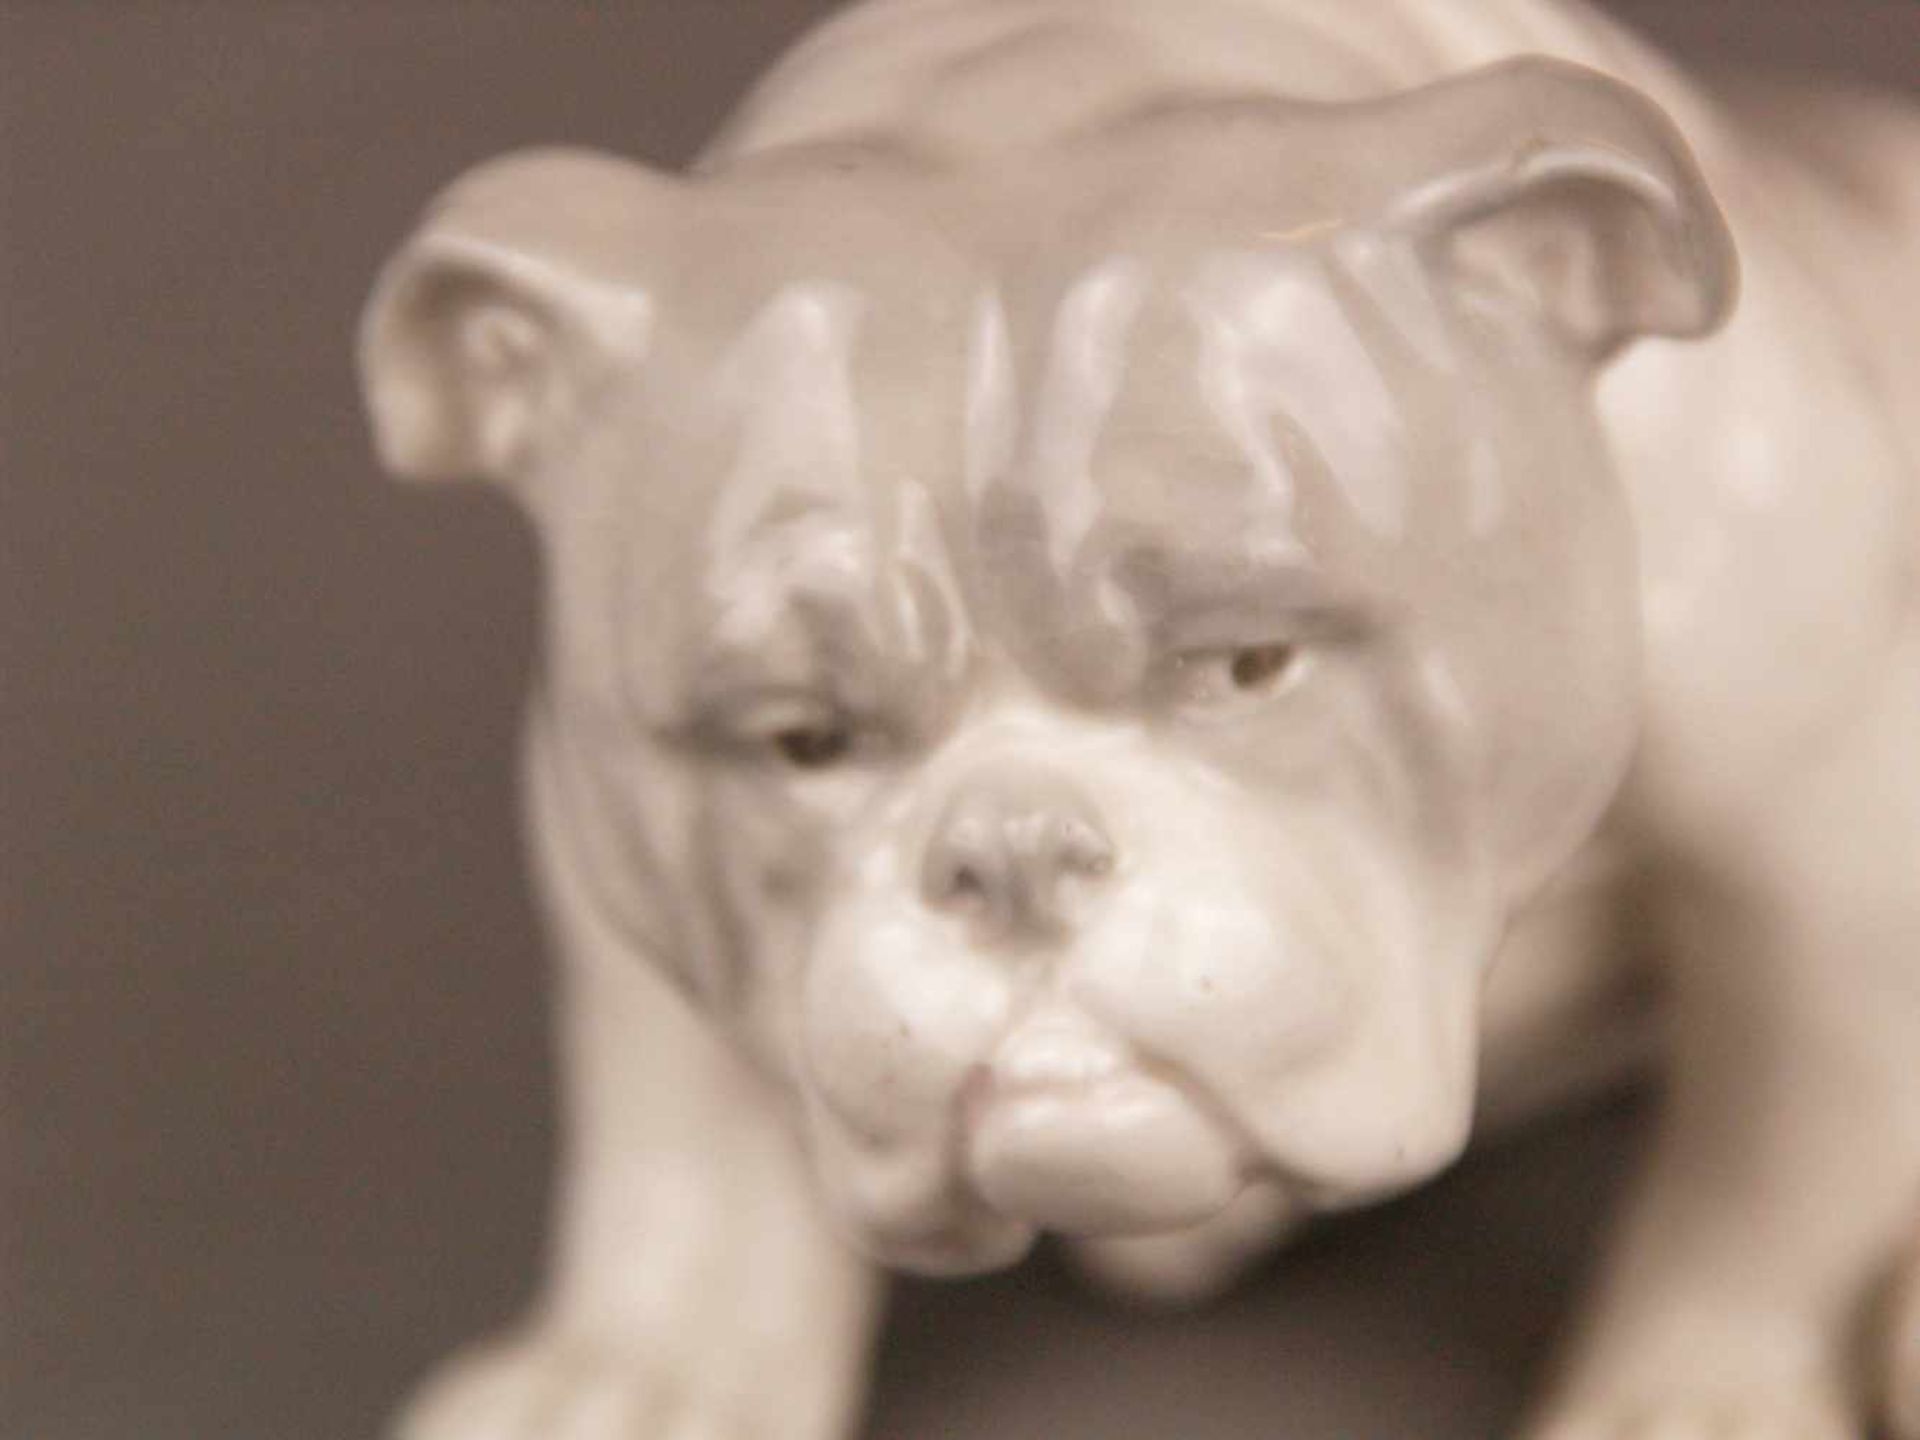 Porzellanfigur Bulldogge - wohl Gebrüder Heubach/Lichte um 1920, pastelltönige - Image 2 of 6